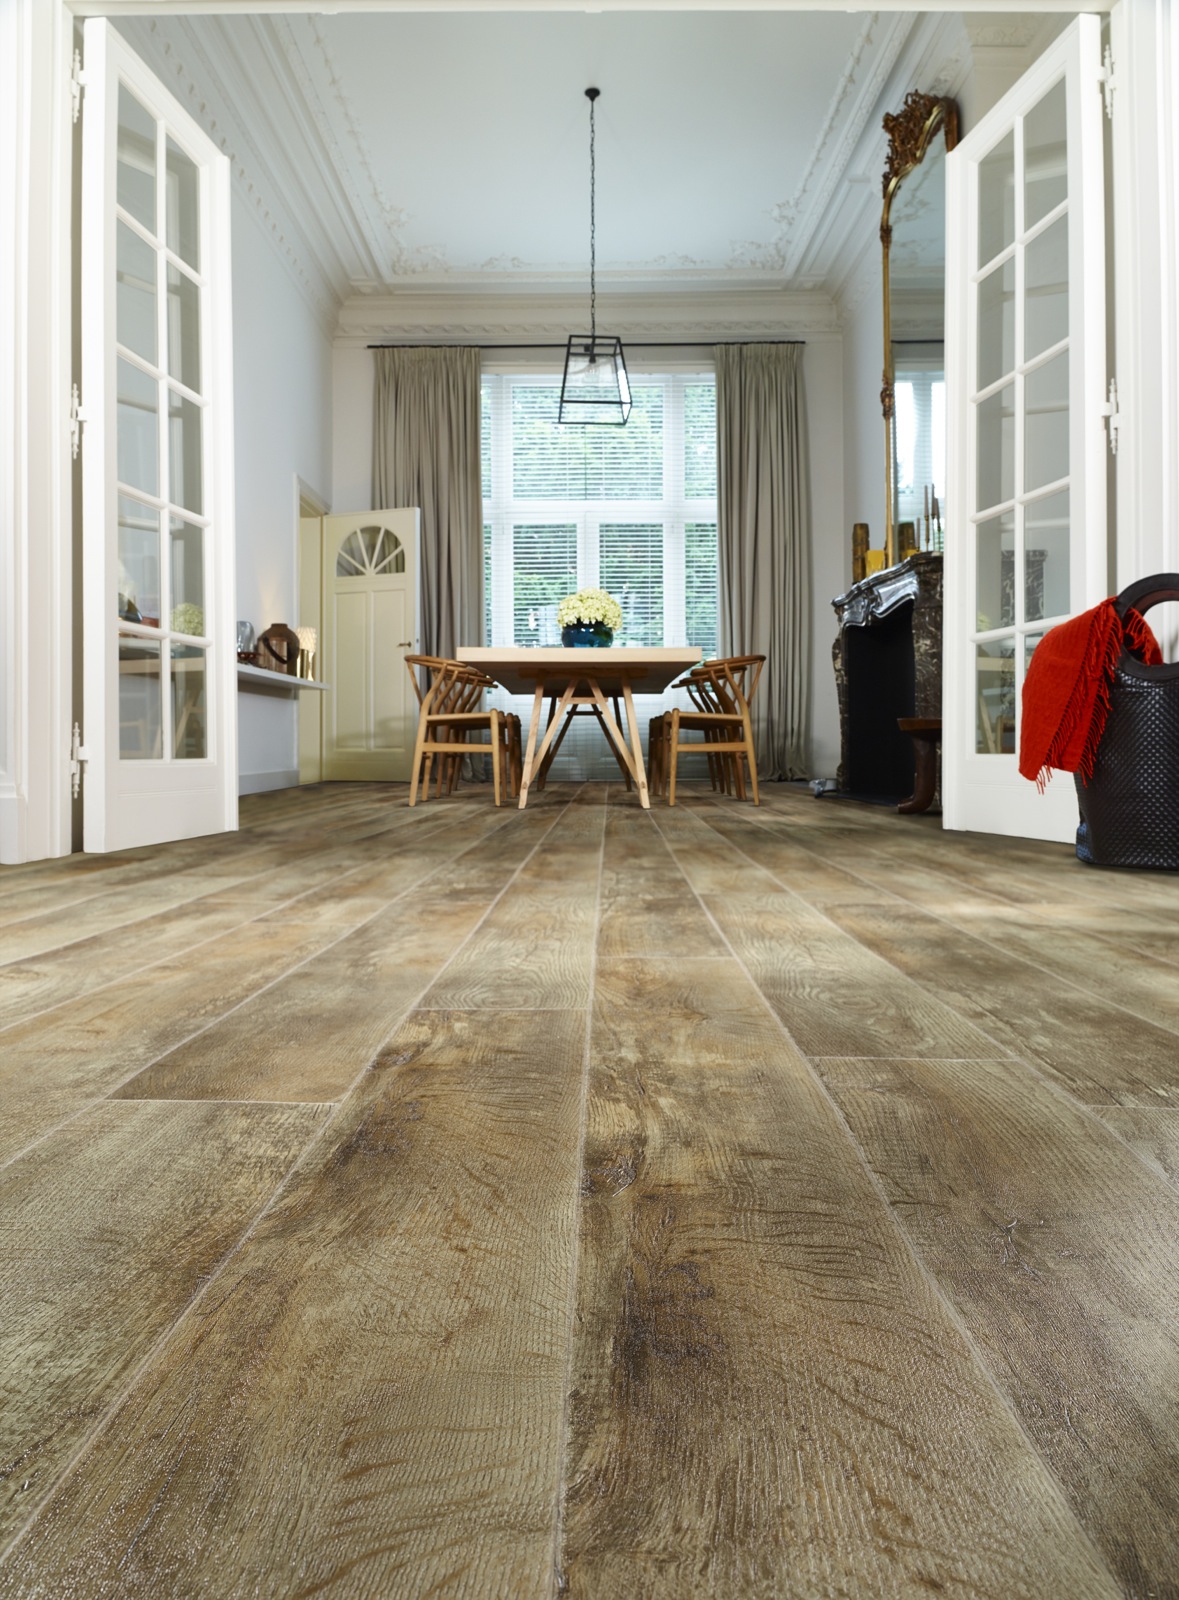 sigaar ondersteuning Onbevredigend Onverwoestbare vinyl vloeren met prachtige houtlook - UW-vloer.nl